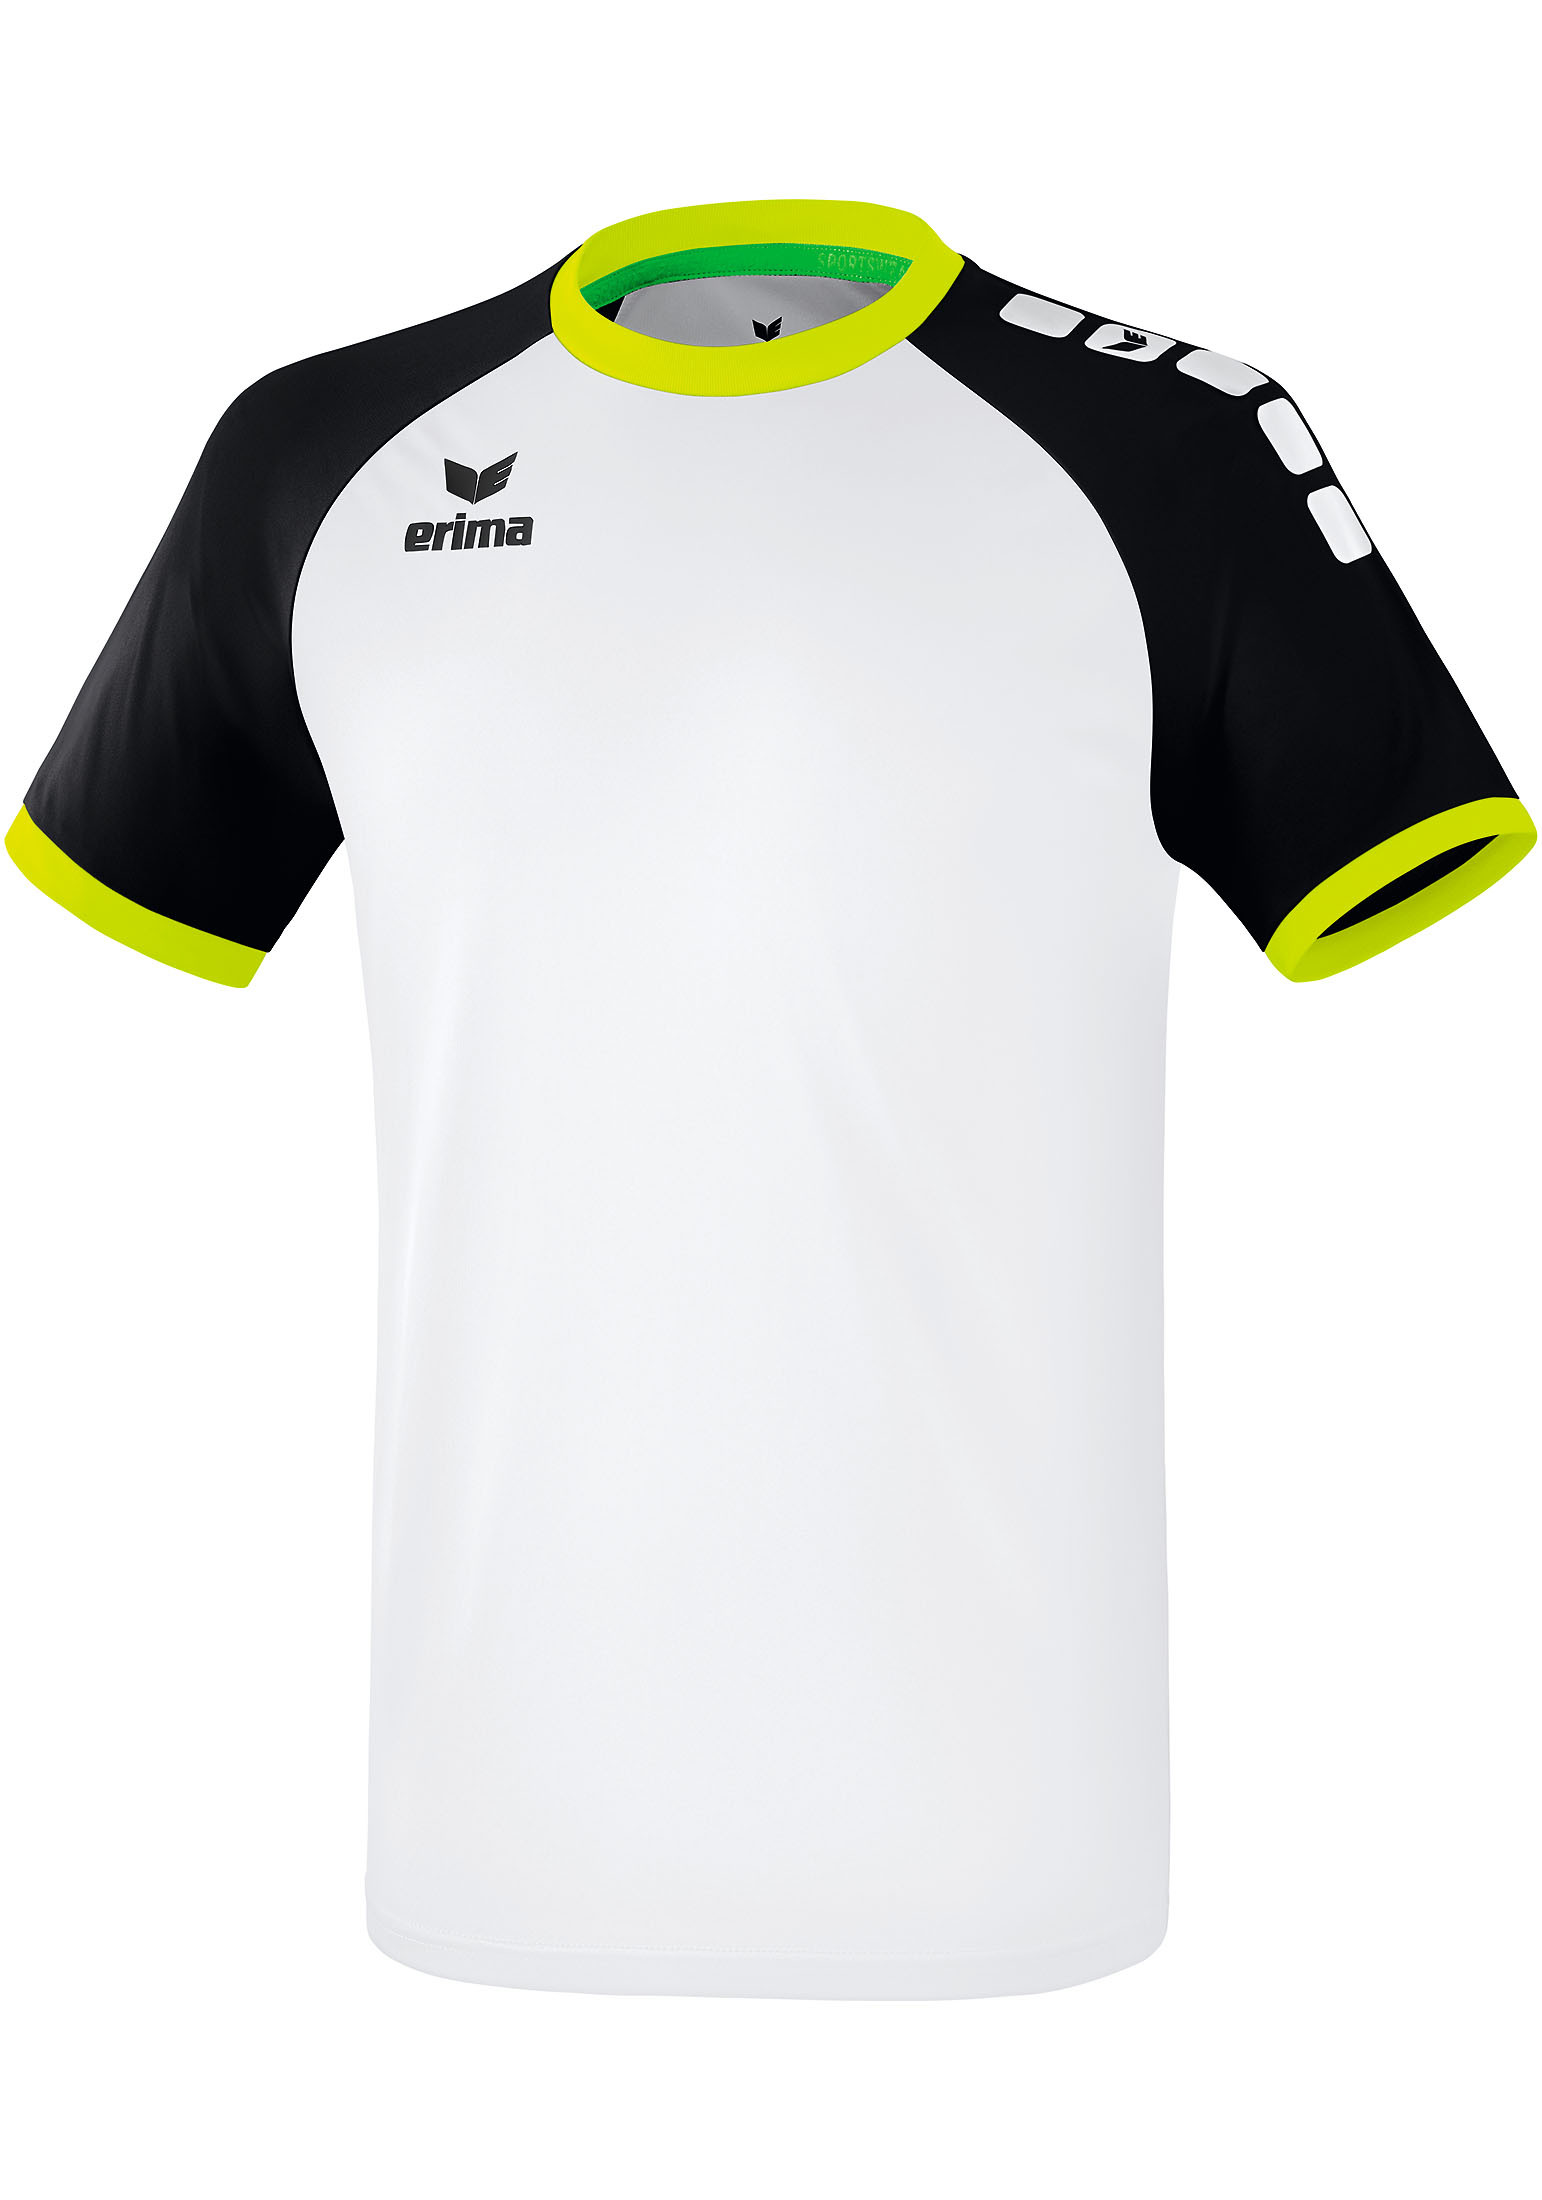 Спортивная футболка erima Zenari 3.0 Trikot, белый рубашка erima zenari 3 0 trikot серый меланж черный темно серый